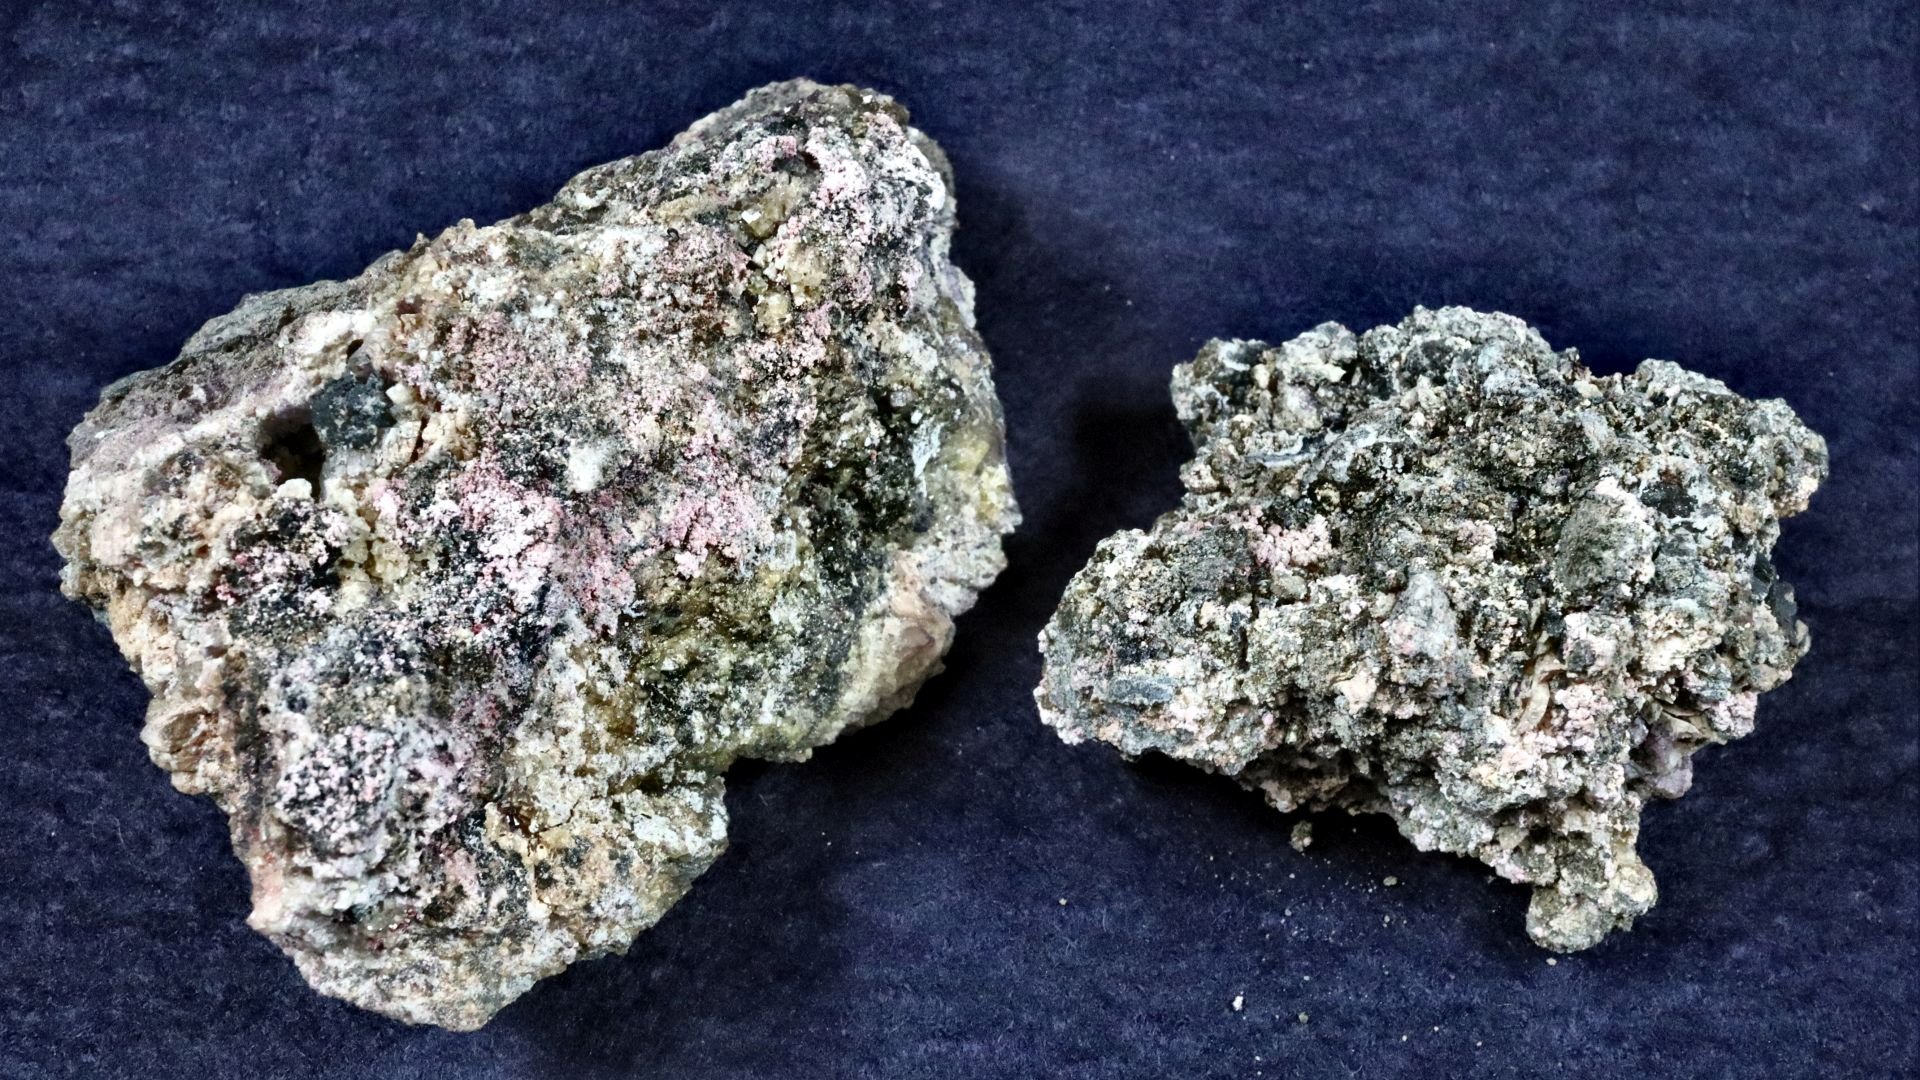 Gestein mit Kobaltblüte, Silbererz und Flussspat vom Lorenz-Stehenden in Ehrenfriedersdorf (Saxonia-Freiberg-Stiftung CC BY-NC-SA)